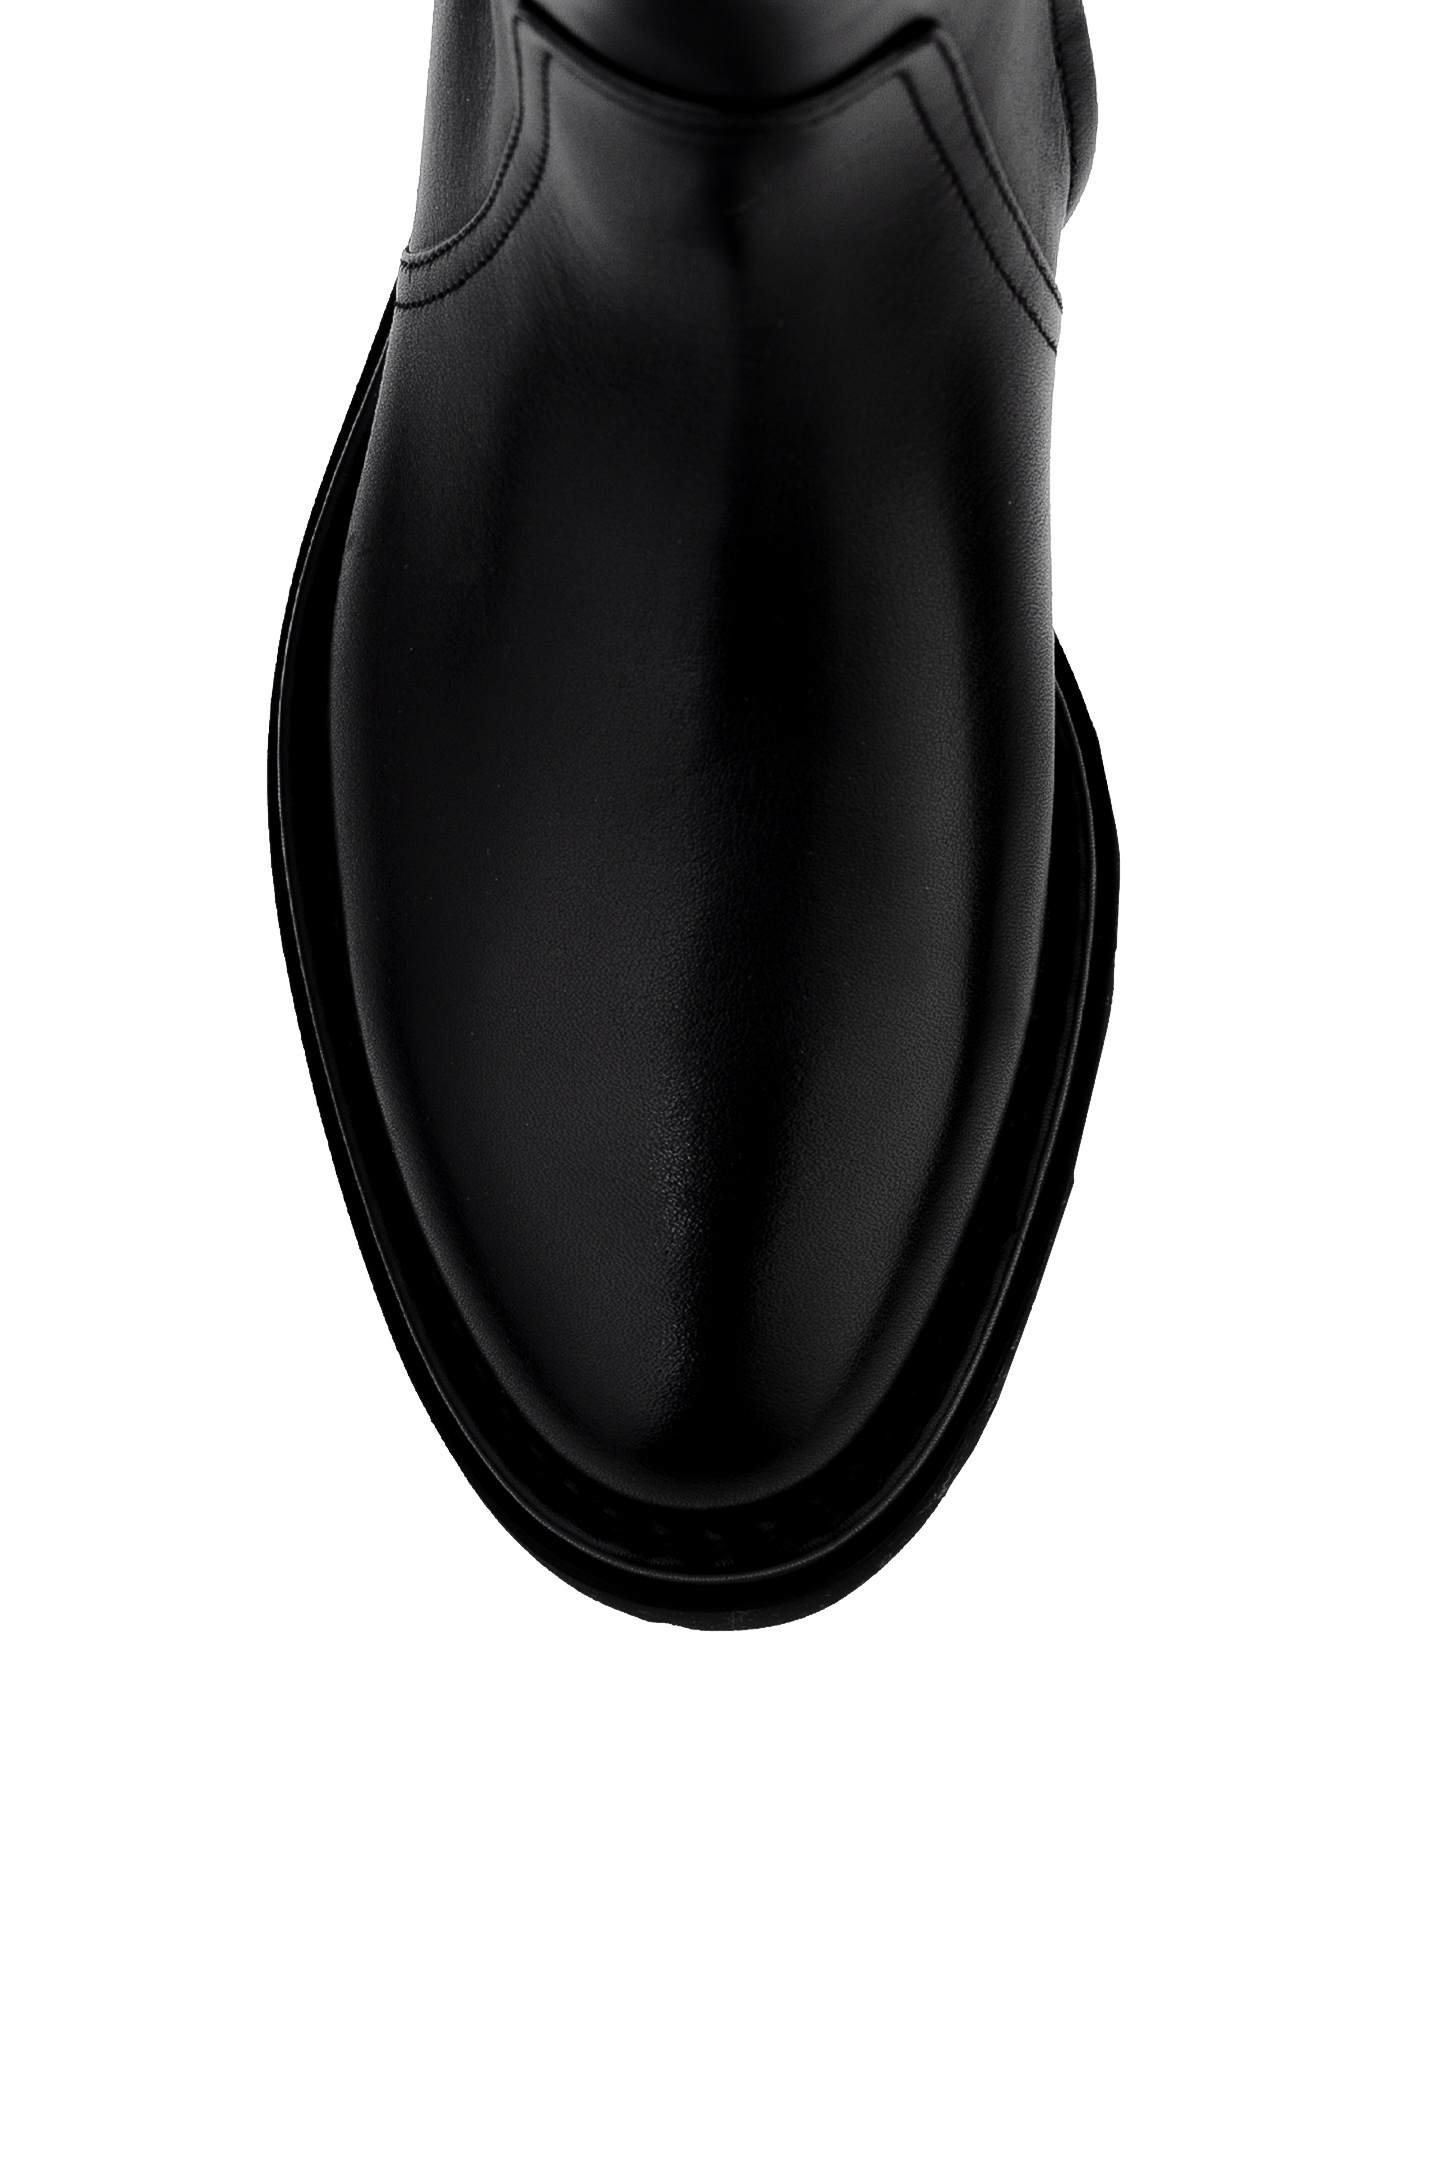 Ботинки SANTONI WTER58956GOMNLMB, цвет: Черный, Женский